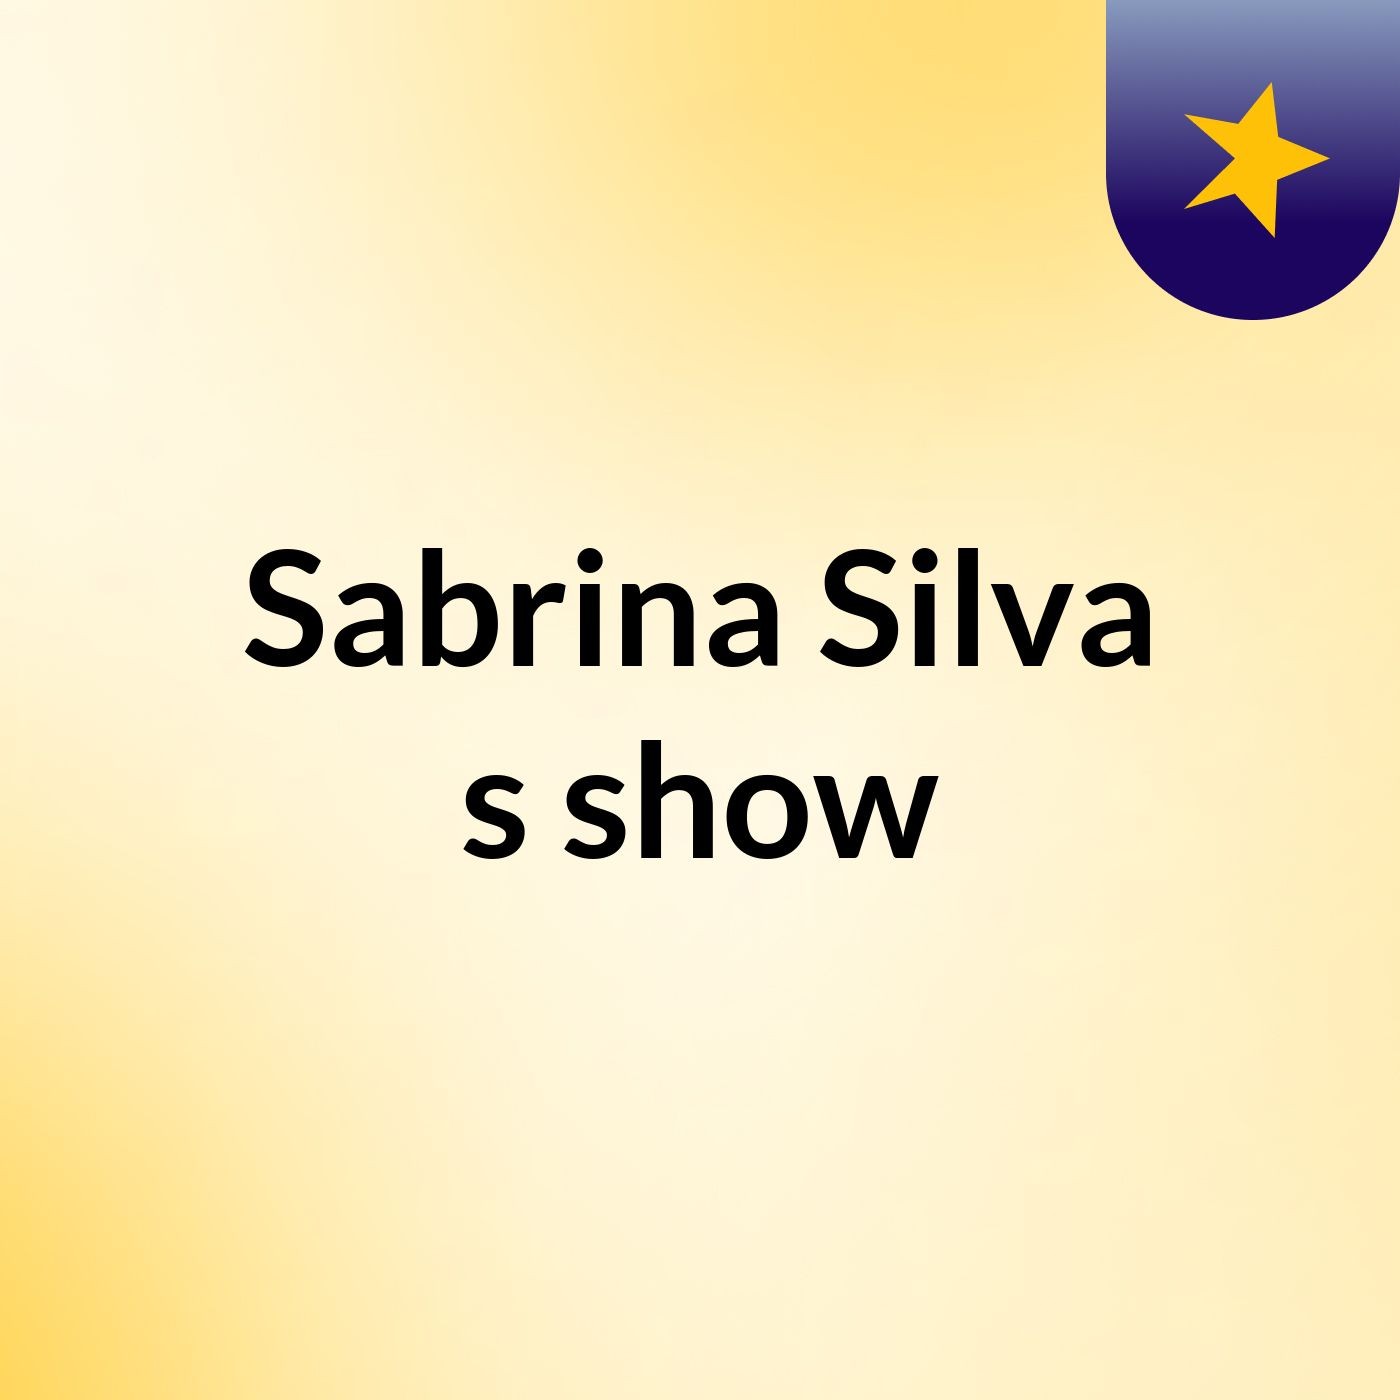 Sabrina Silva's show